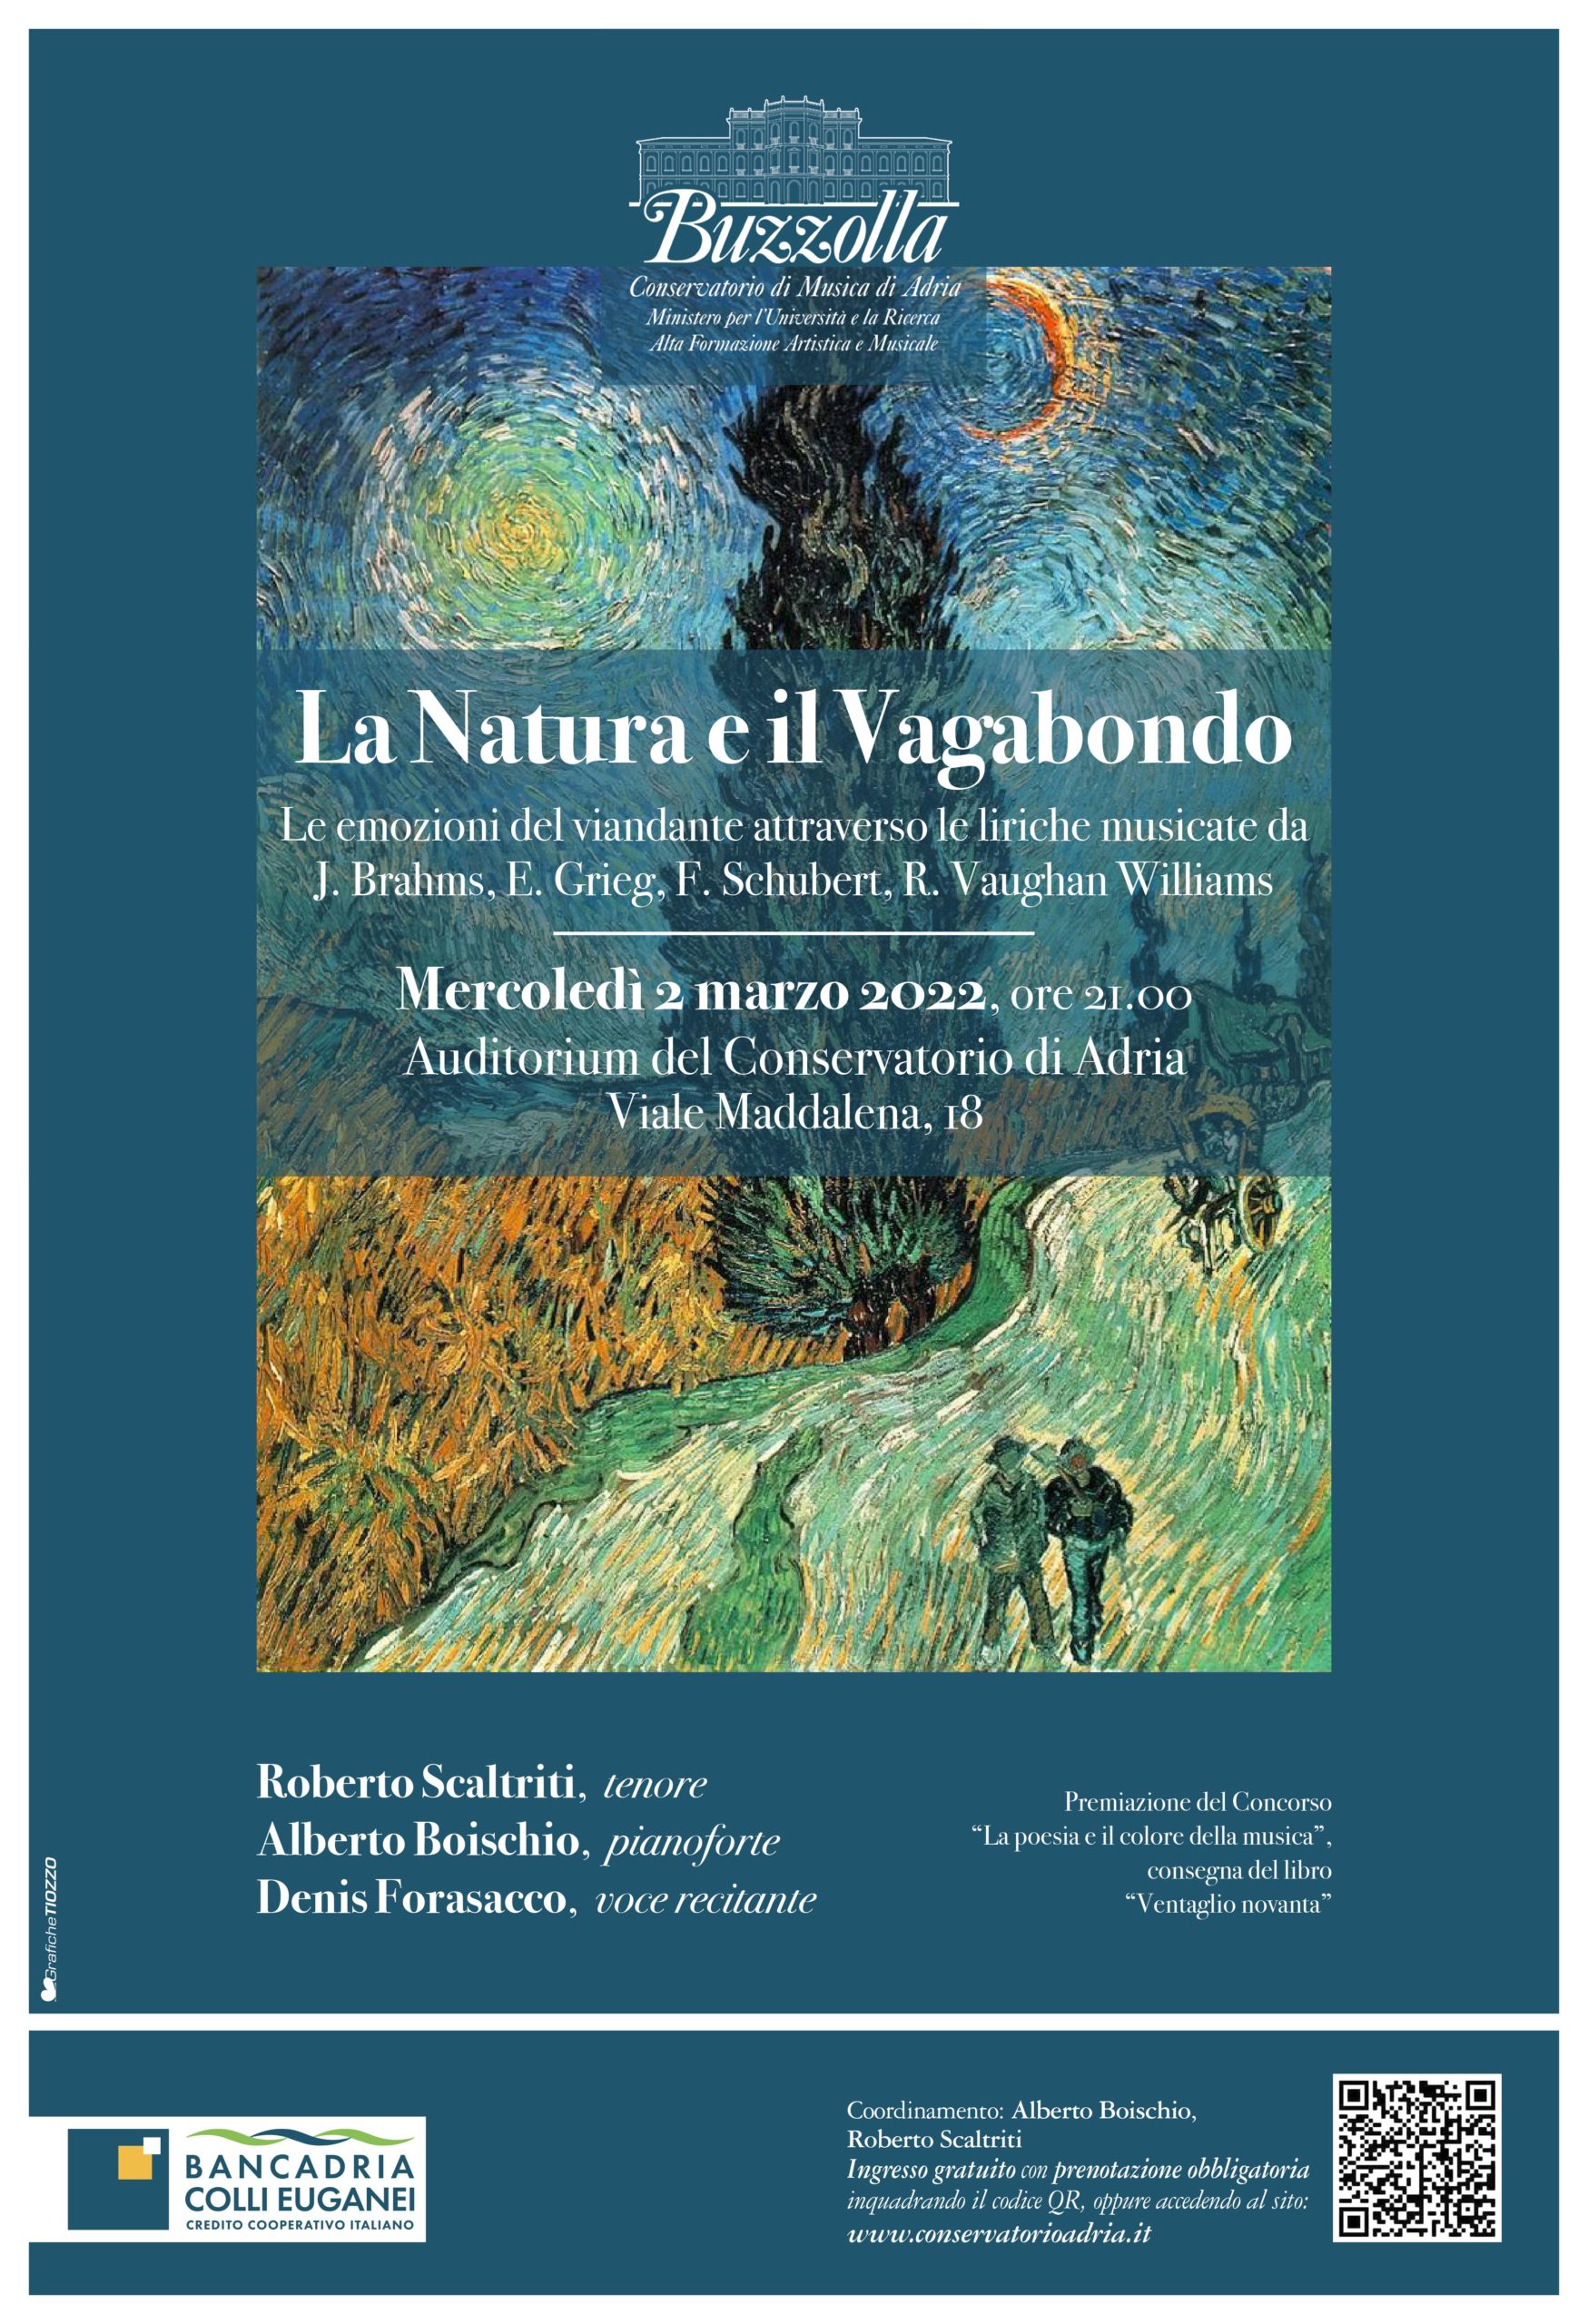 Concerto La Natura e il Vagabondo, 2 Marzo 2022 ore 21.00